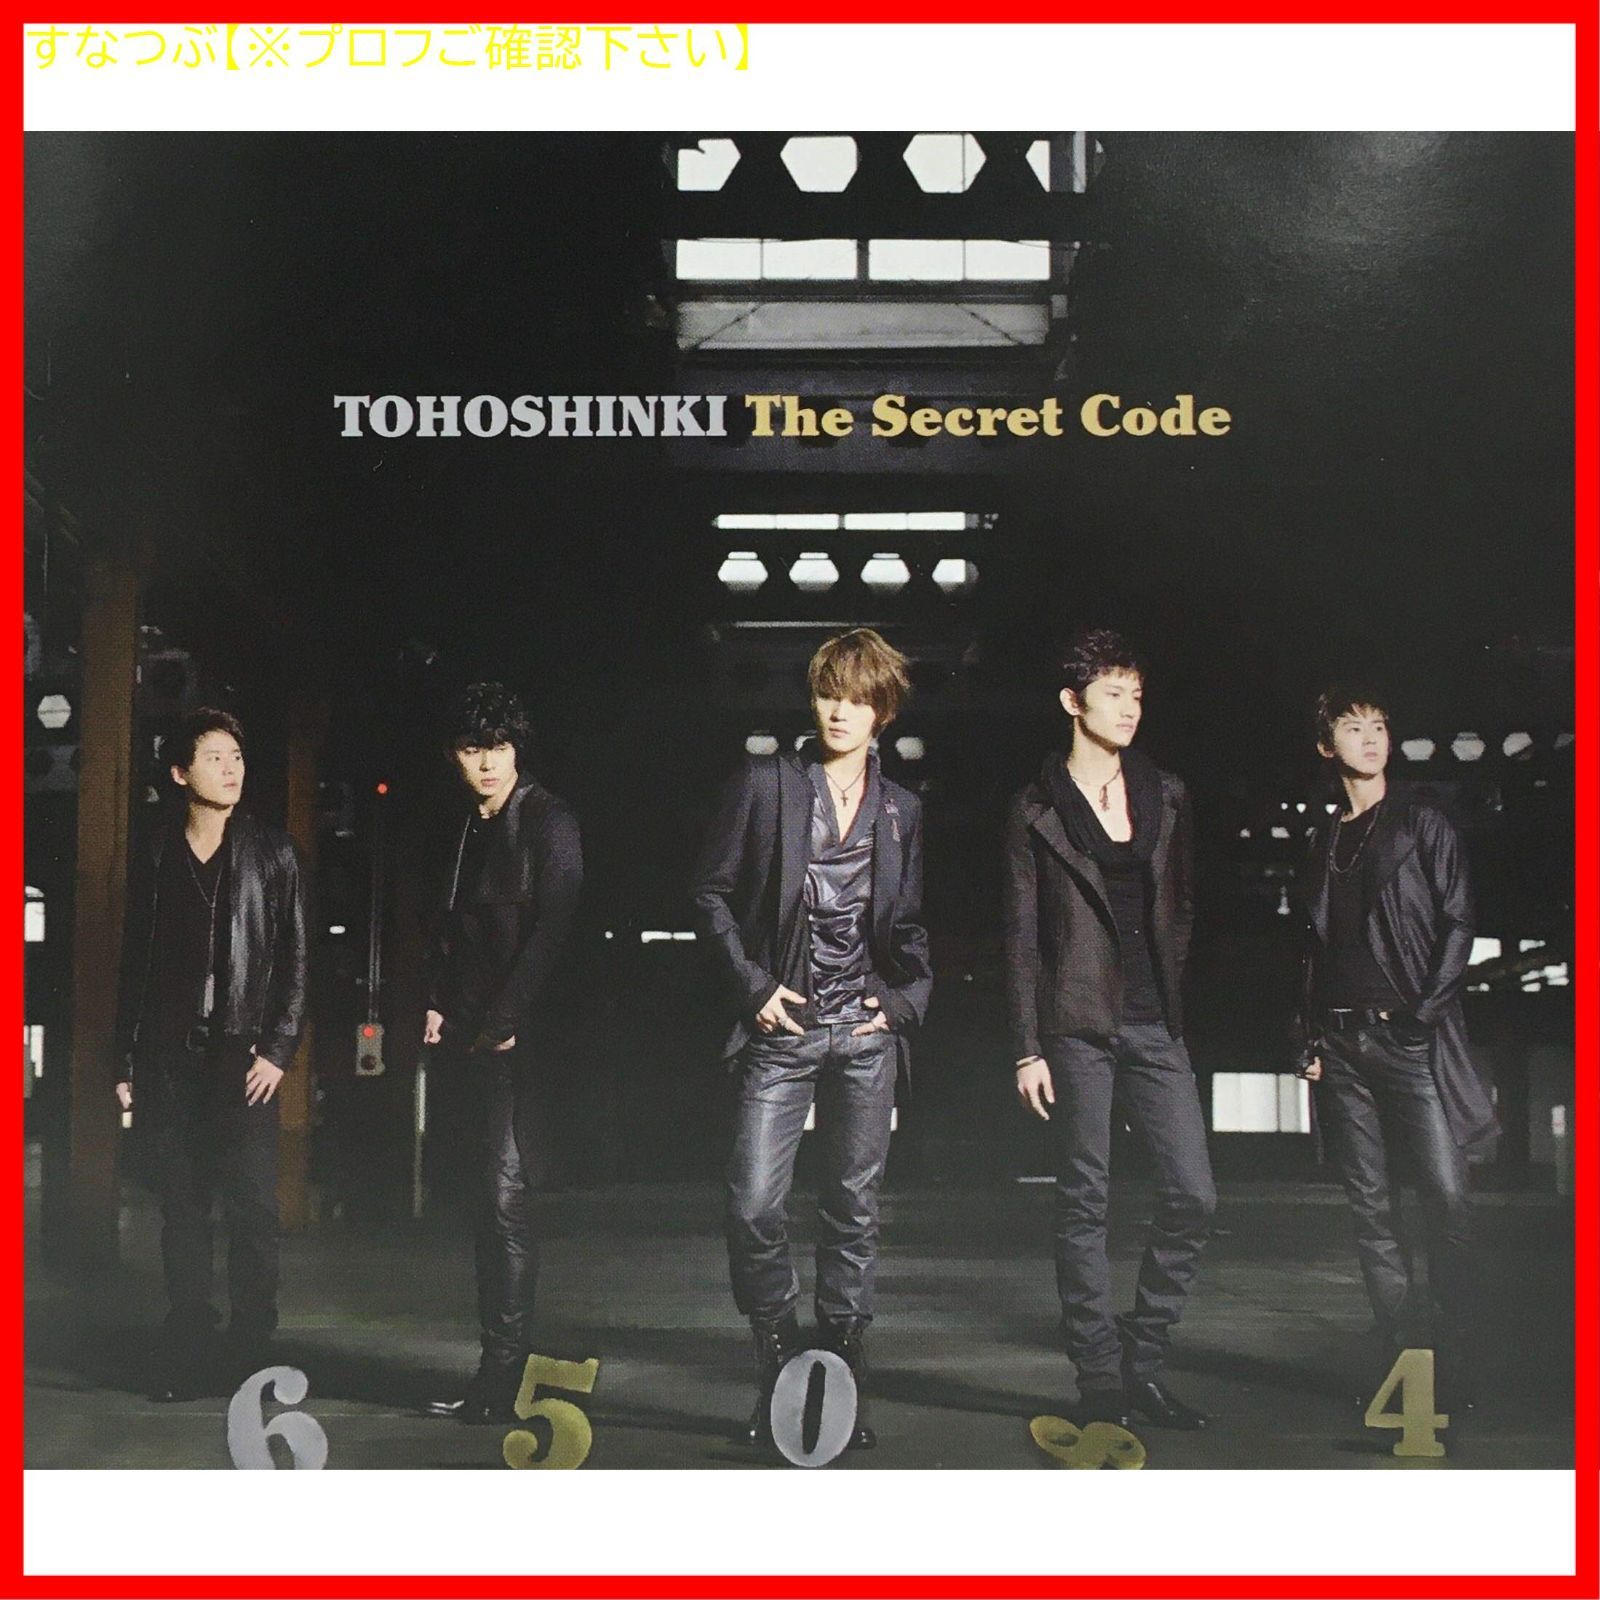 【新品未開封】The Secret Code(2CD+DVD付) 東方神起 形式: CD